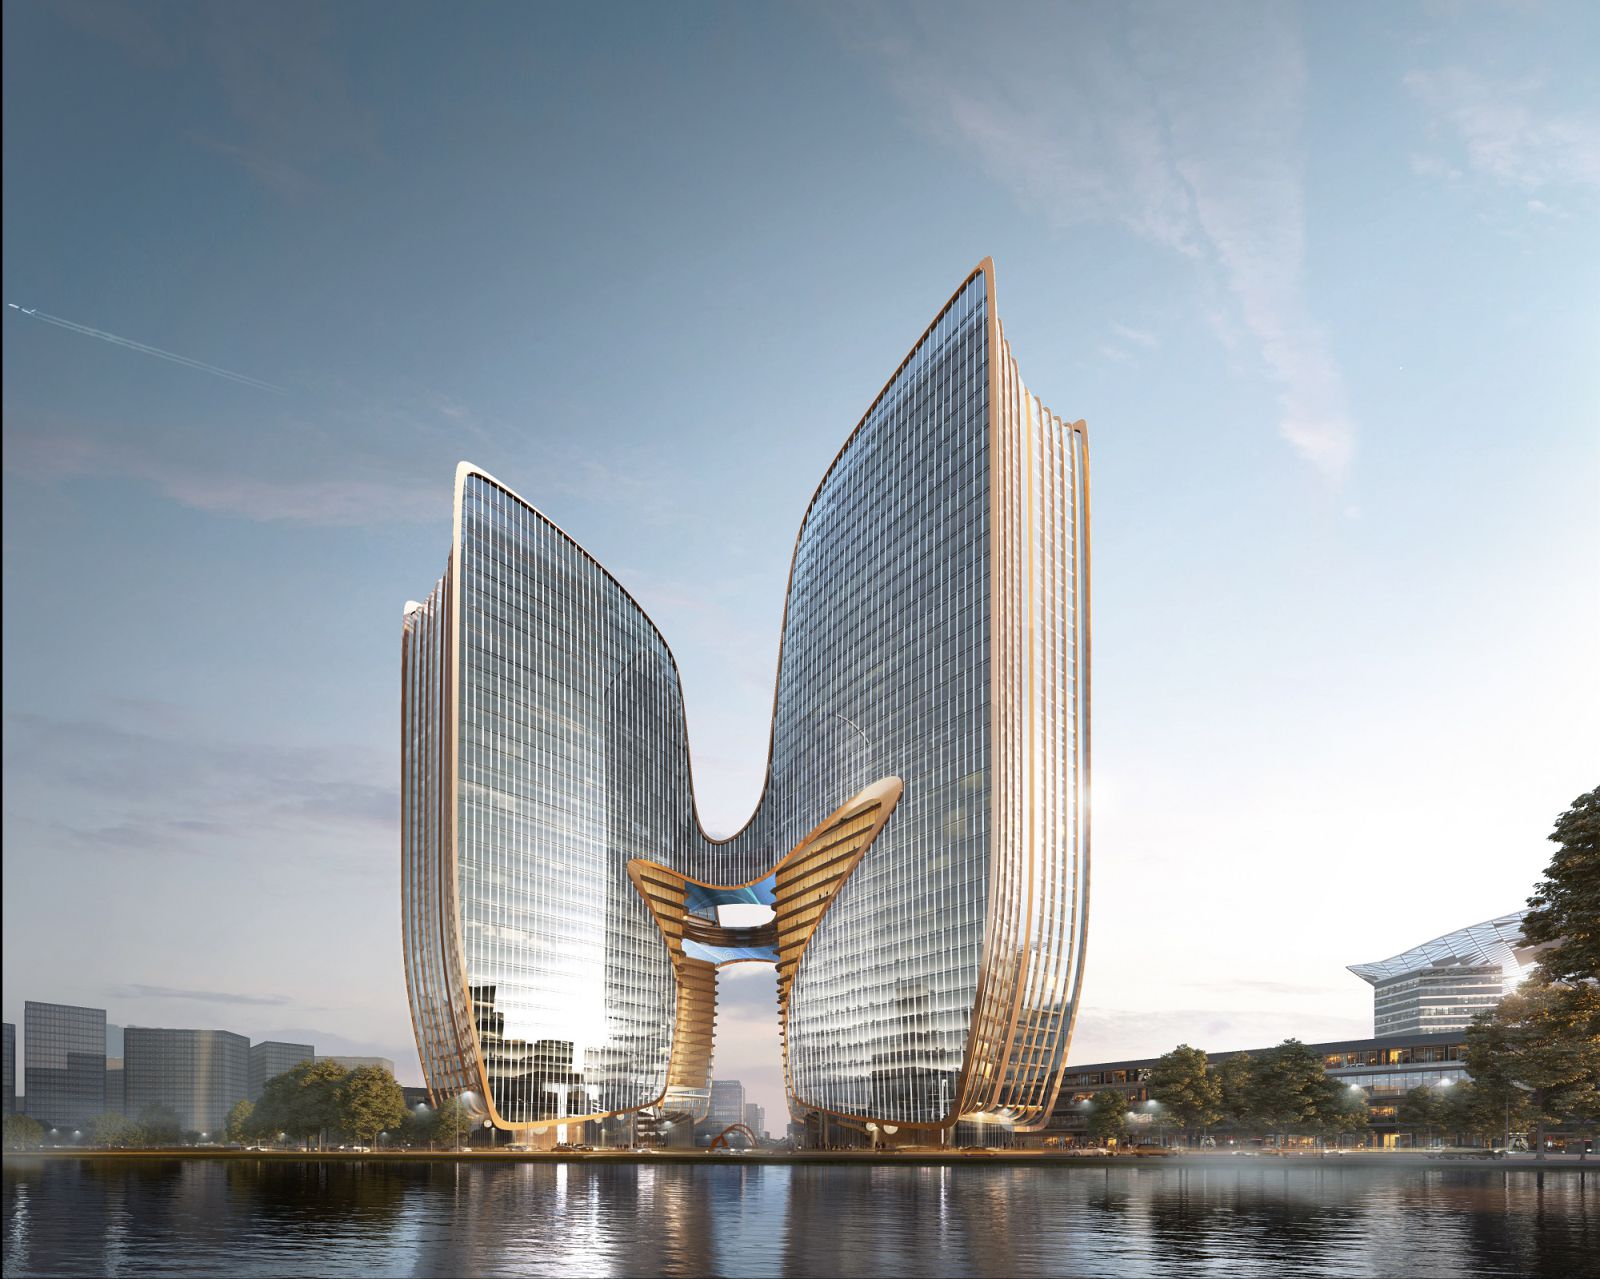 Shanghai Yangtze River Delta G60 Innovation Center